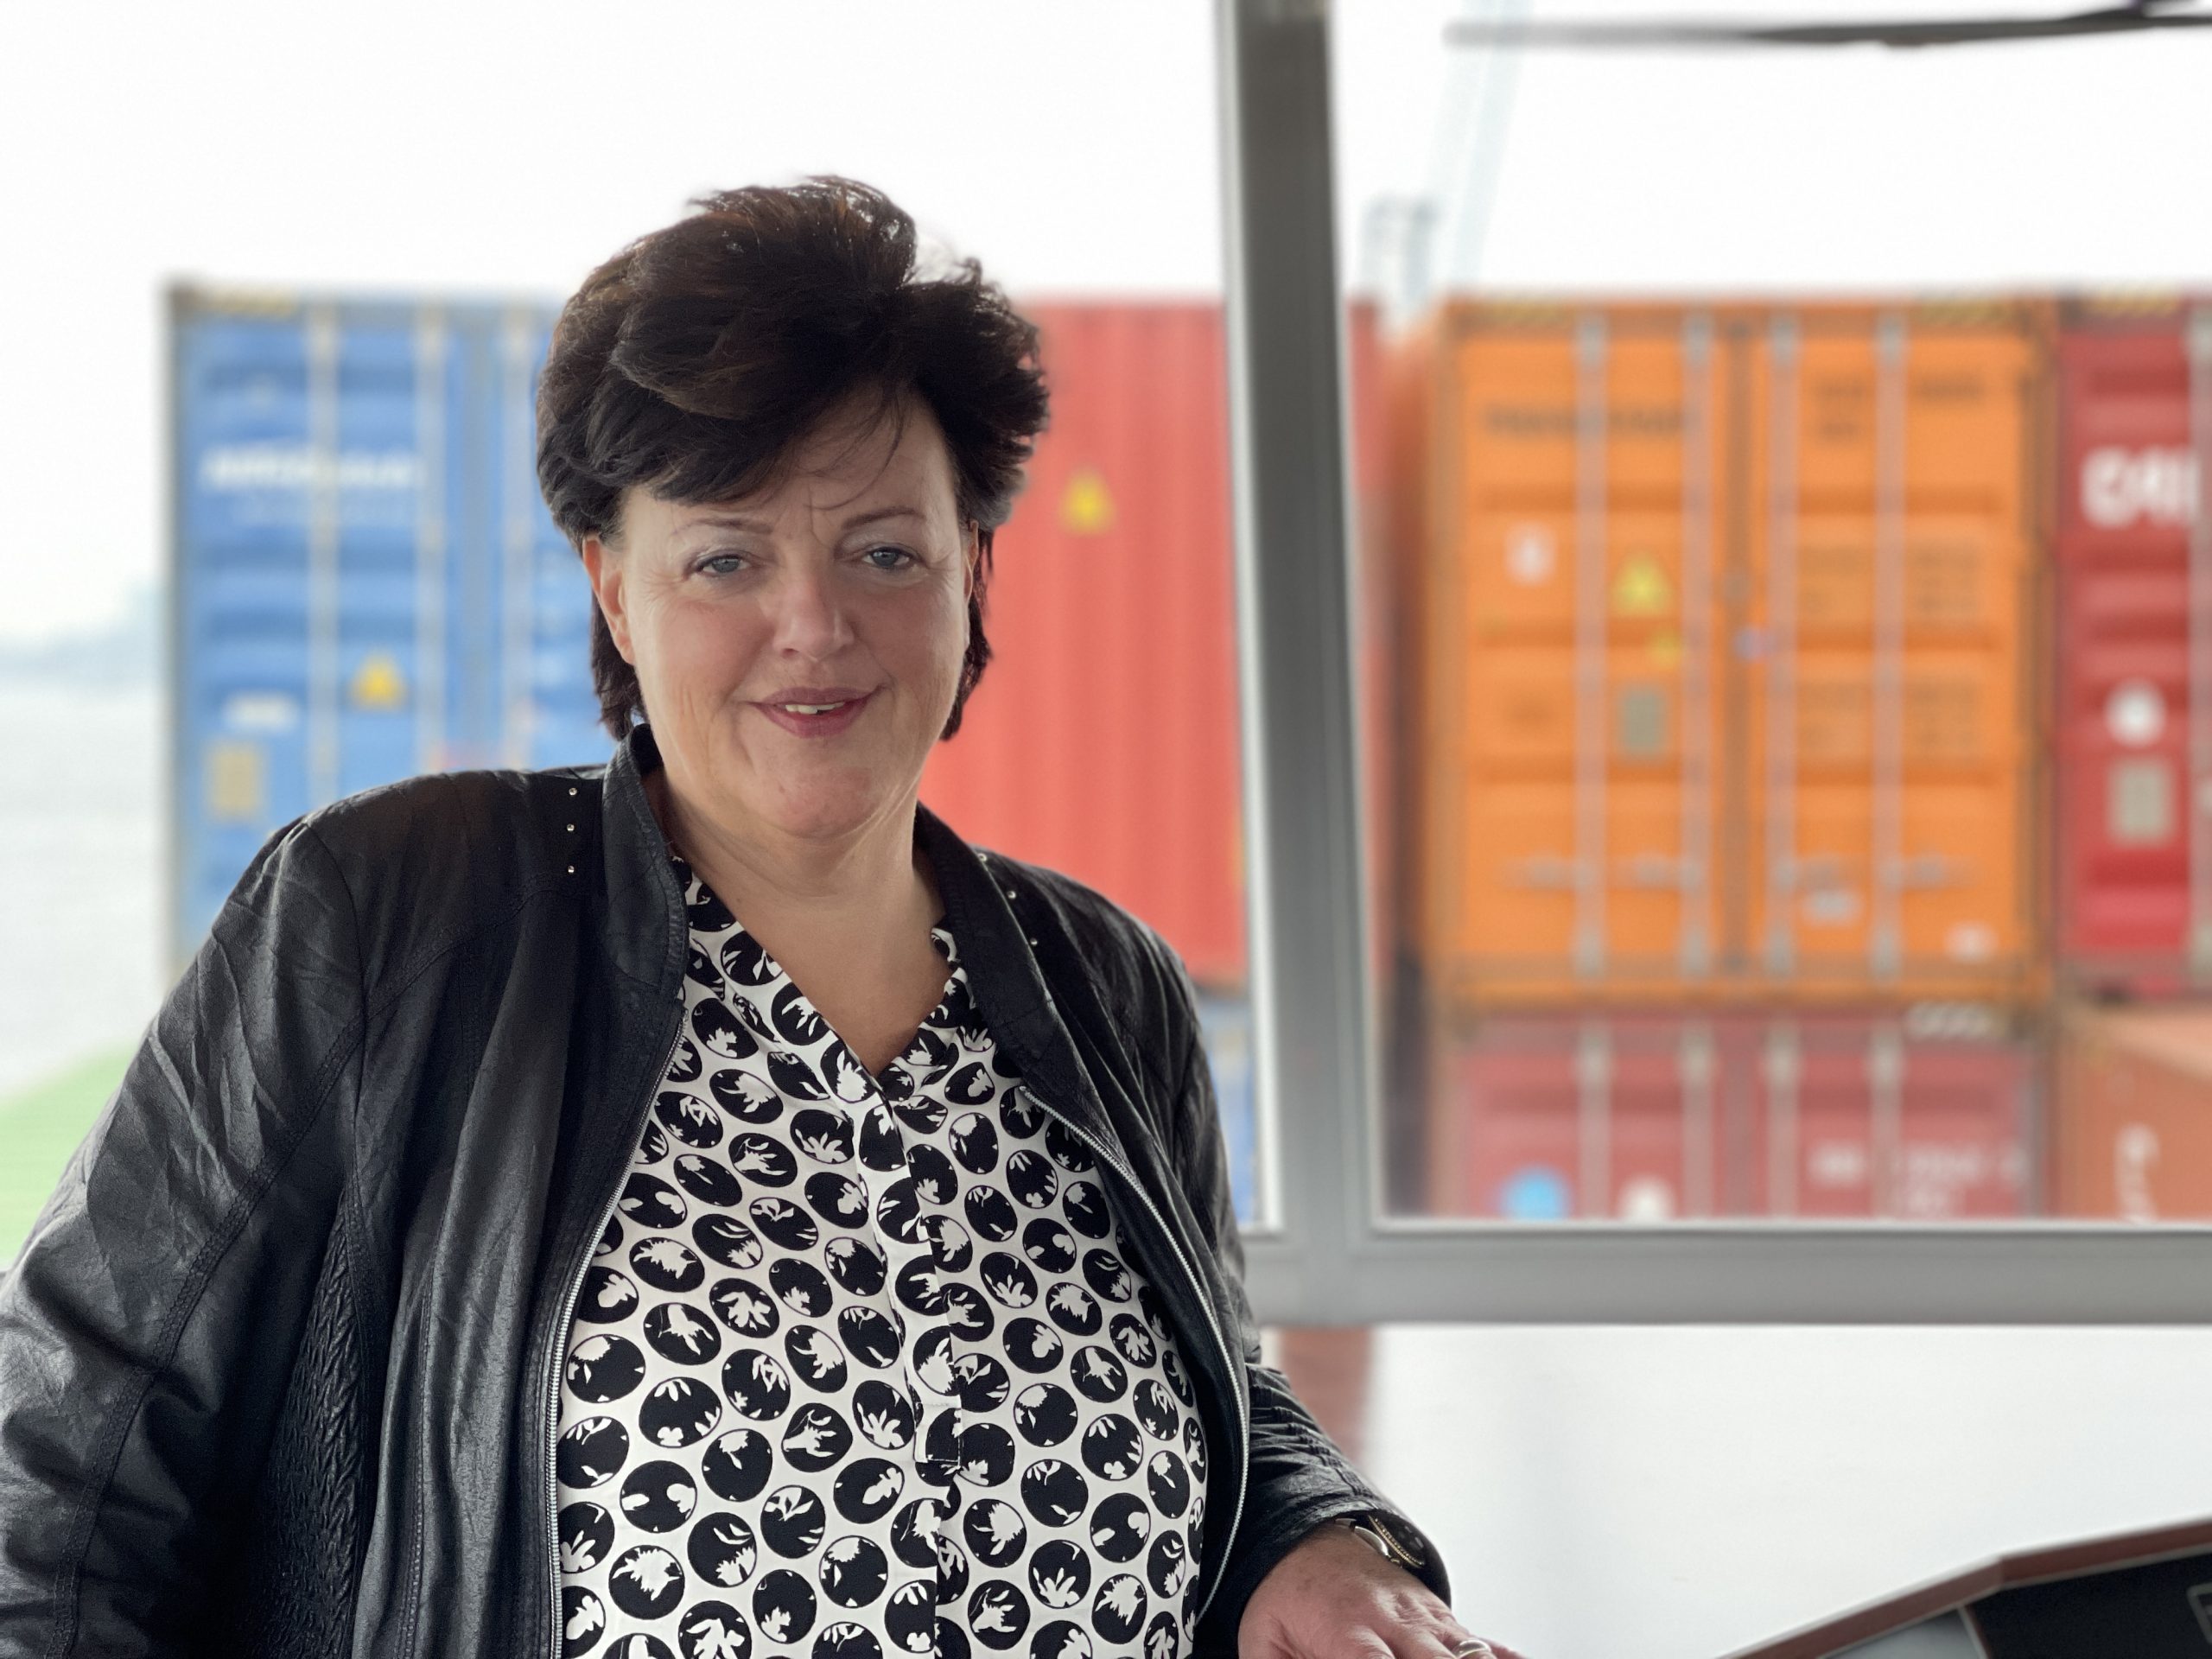 Jozien van der Waal is schadebehandelaar bij EOC. Haar standplaats is Zwijndrecht en zij geeft leiding aan twee andere schadebehandelaars. Ze werkt al 35 jaar als schadebehandelaar.